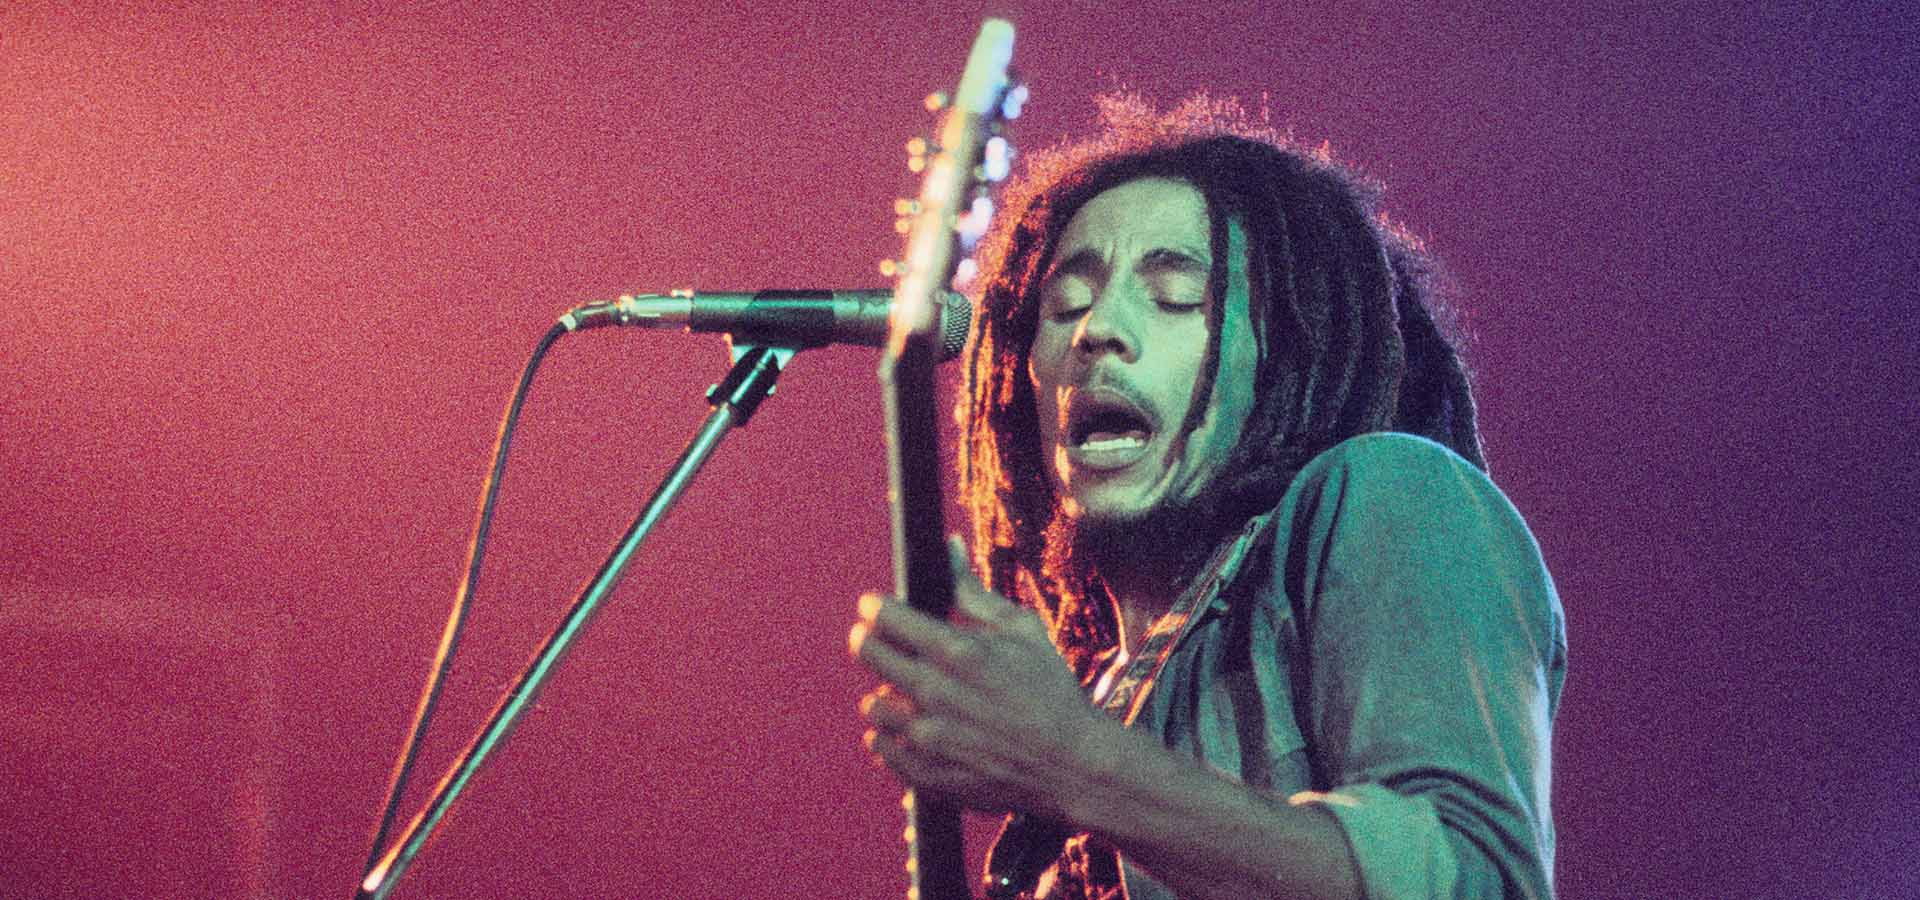 Bob Marley, Den Haag (Voorburg), Niederlande 1976 Den Haag, Niederlande - 1976, (Foto Gijsbert Hanekroot) *** Lokale Bildunterschrift *** Bob Marley and the Wailers